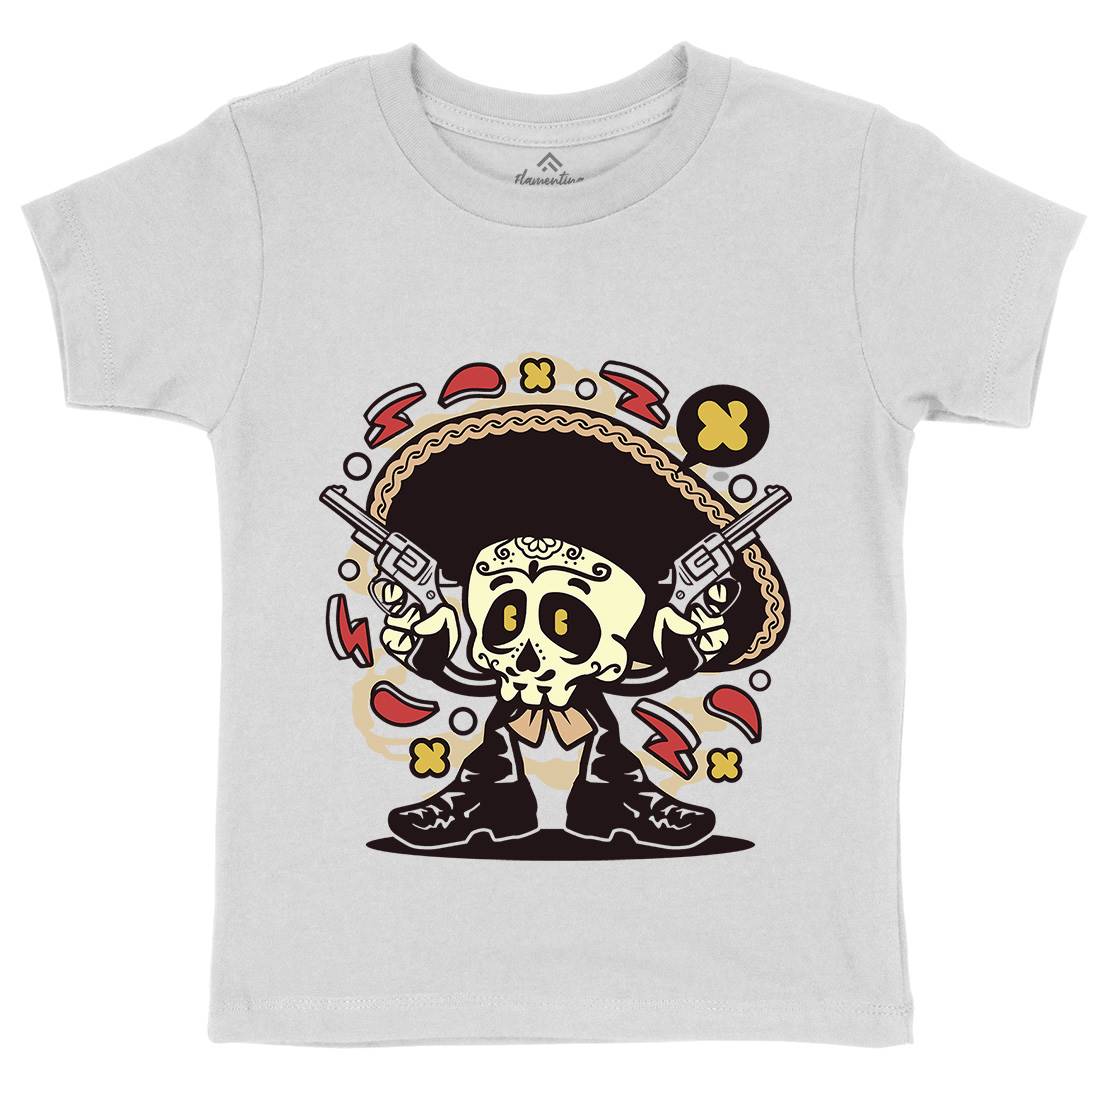 Mariachi Gunner Kids Crew Neck T-Shirt Music C169